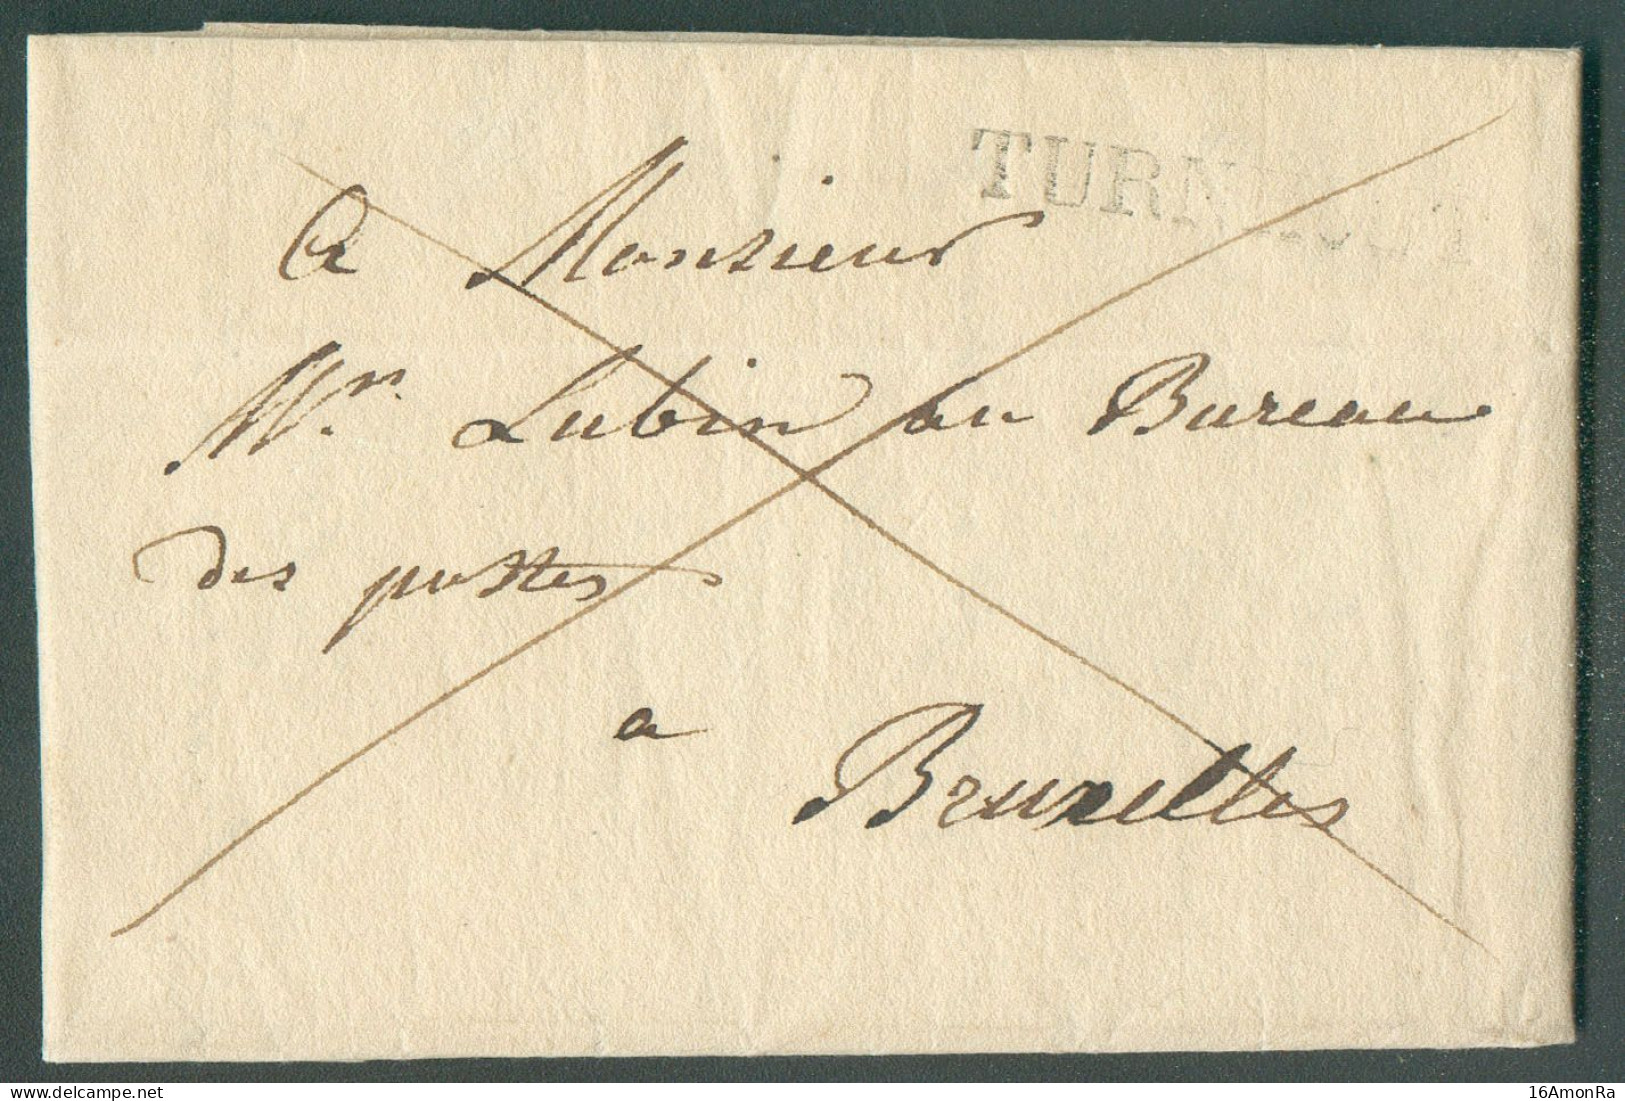 LAC De TURNHOUT le 4 Septembre 1828 Adressée En Franchise De Port à Mr. Lubin, Au Bureau De Postes à Bruxelles.  Belle F - 1815-1830 (Holländische Periode)